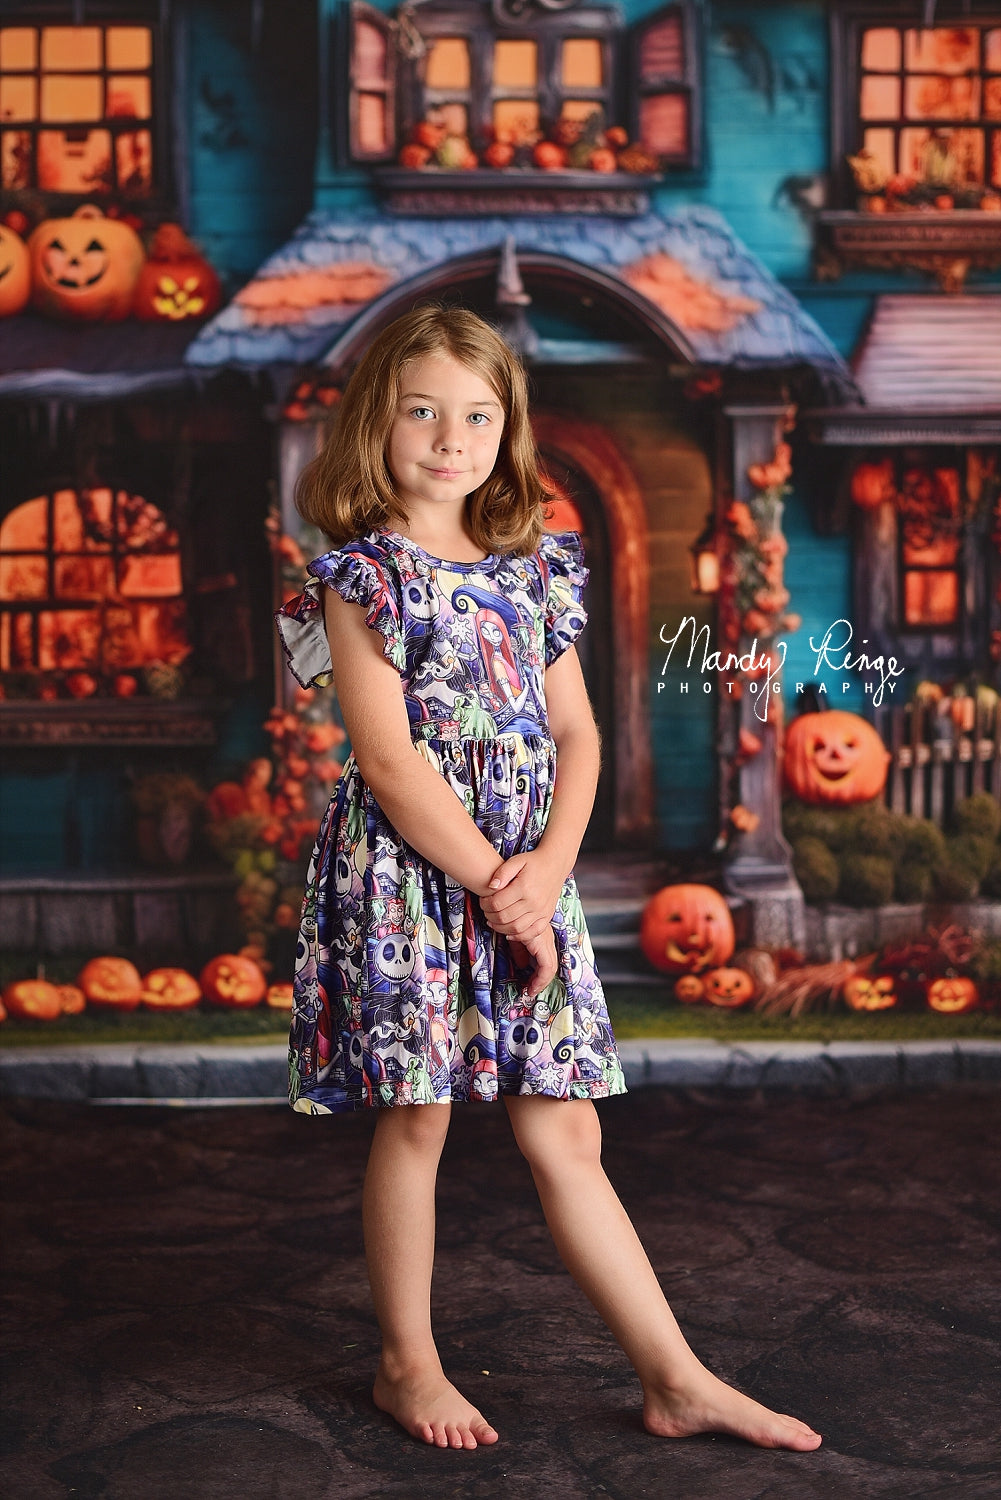 Kate Citrouille Halloween Maison Jaune Toile de fond conçue par Mandy Ringe